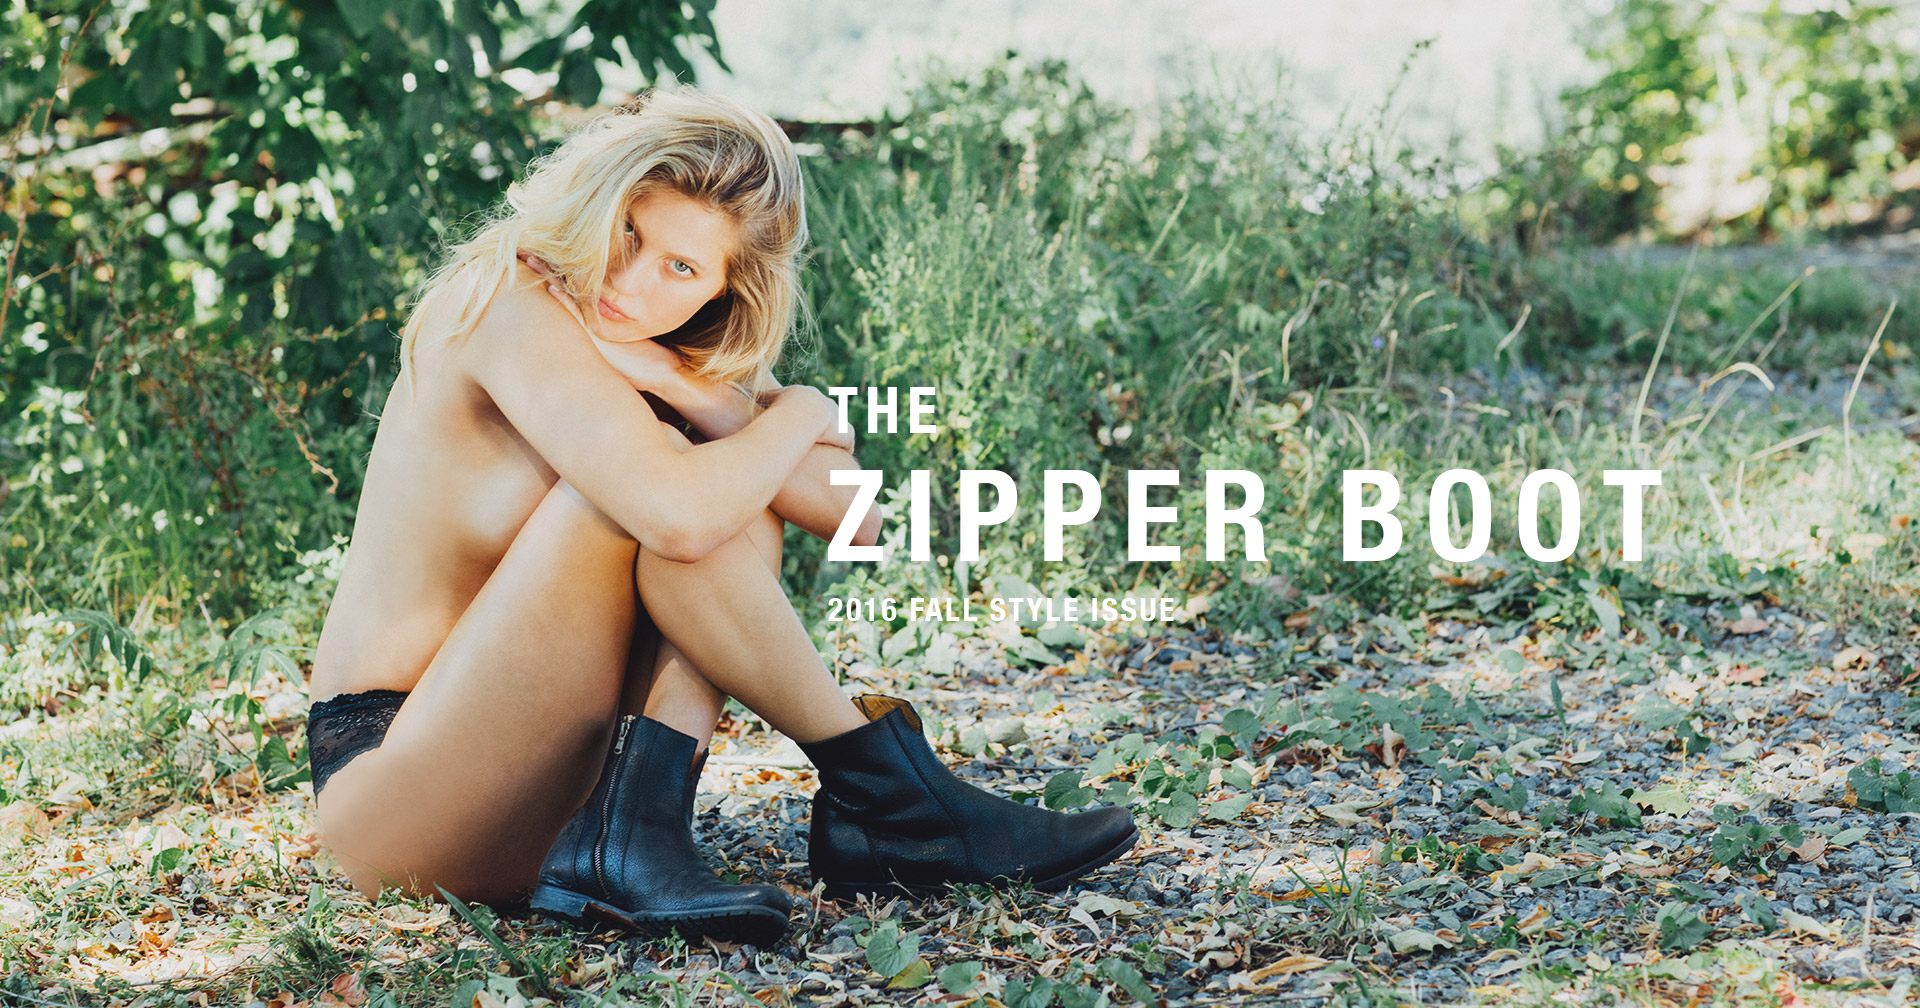 The Zipper Boot